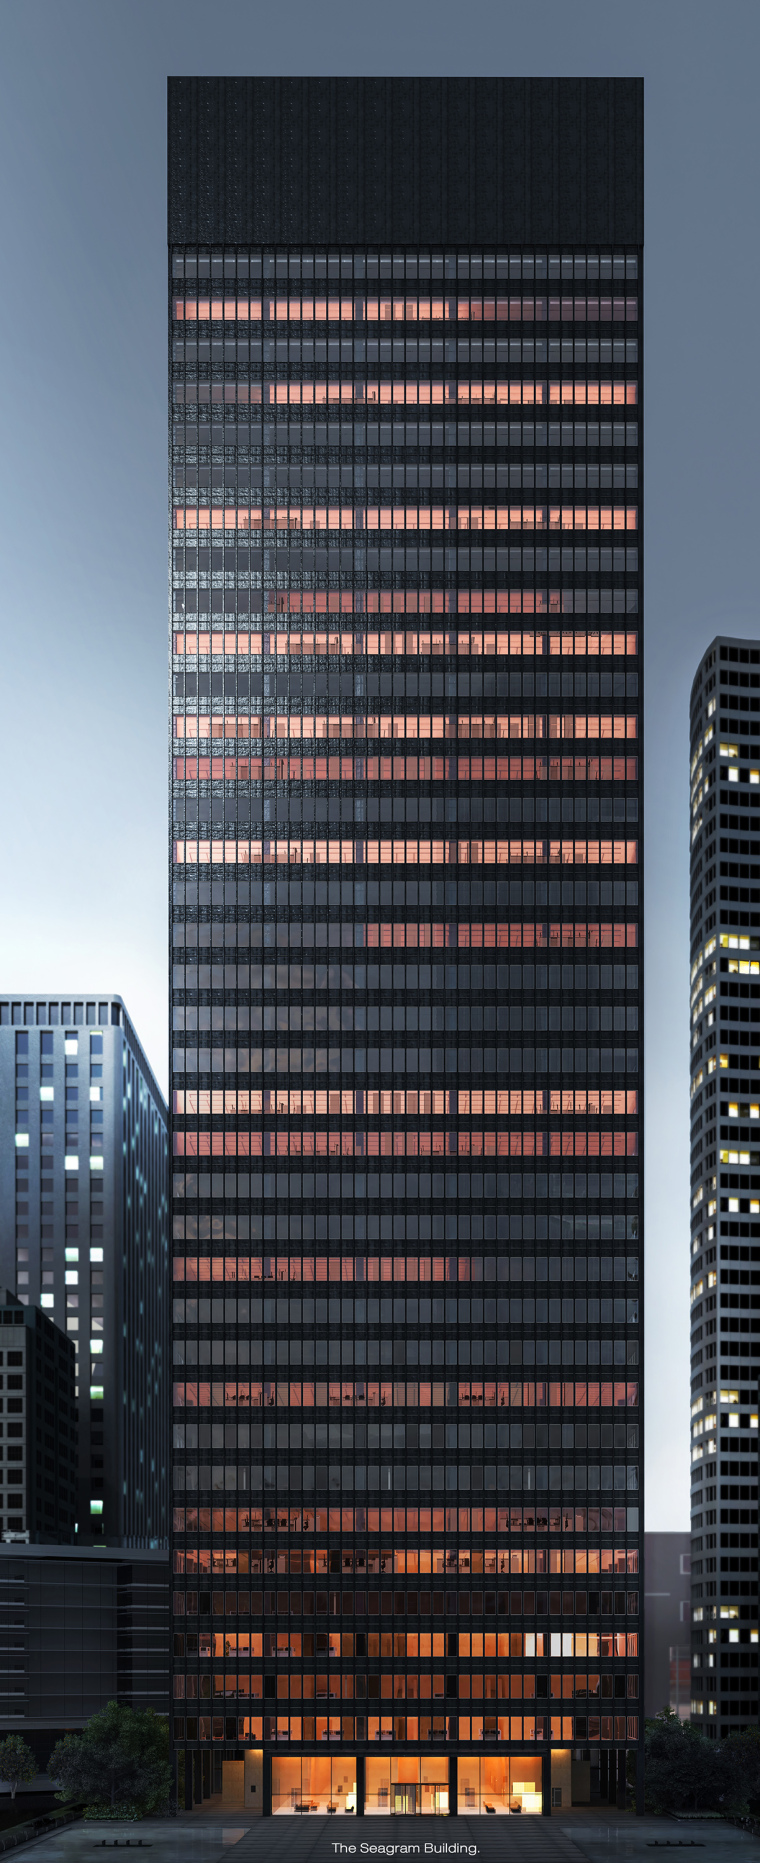 3dmax夜景渲染资料下载-致敬经典——纽约西格拉姆大厦表现